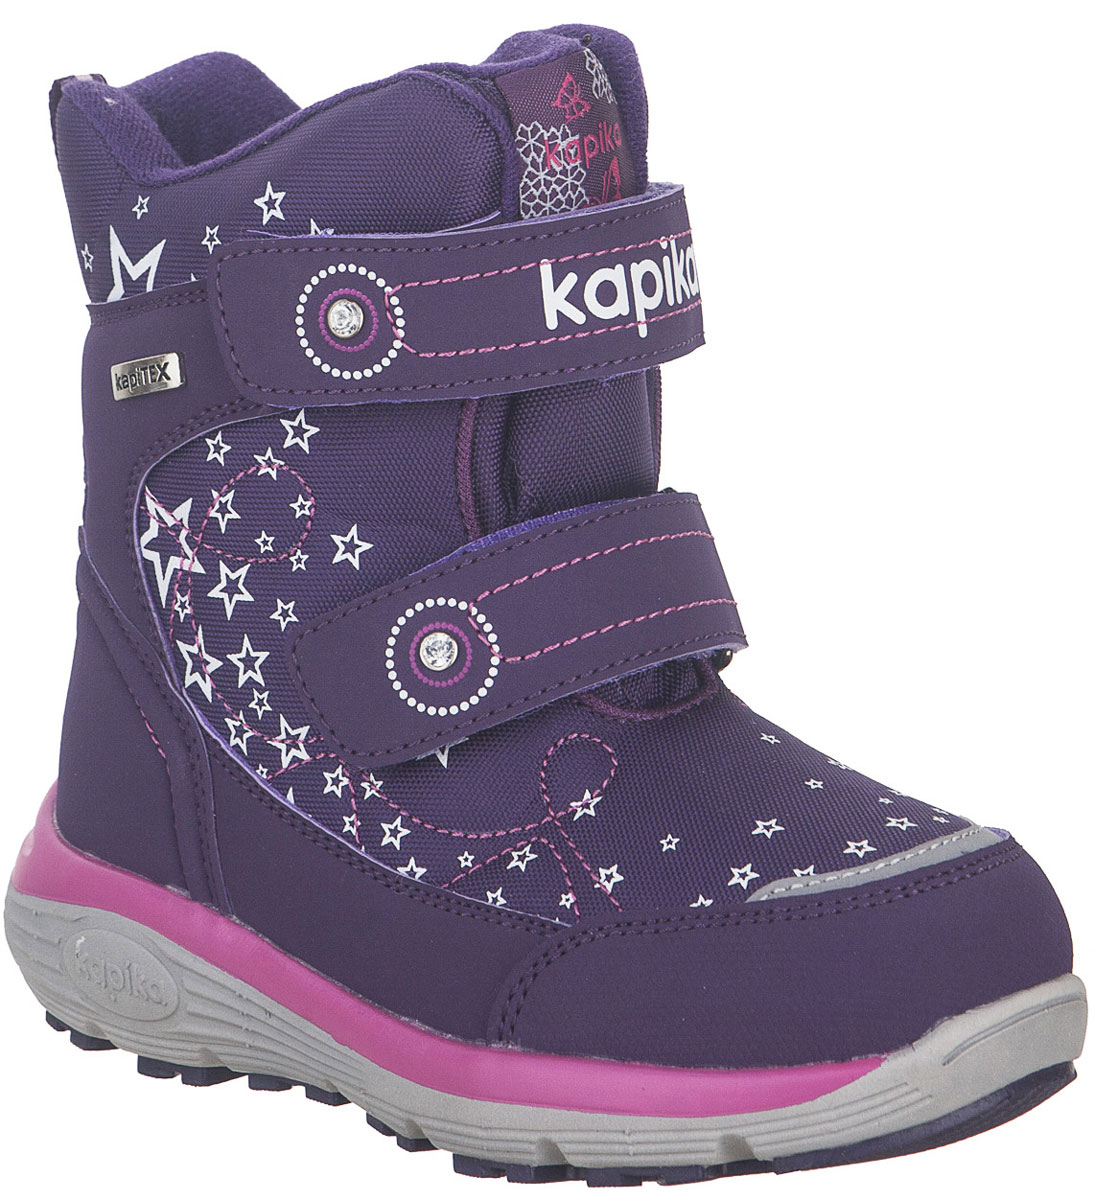 Ботинки для девочки Kapika, цвет: фиолетовый. 42255-2. Размер 31